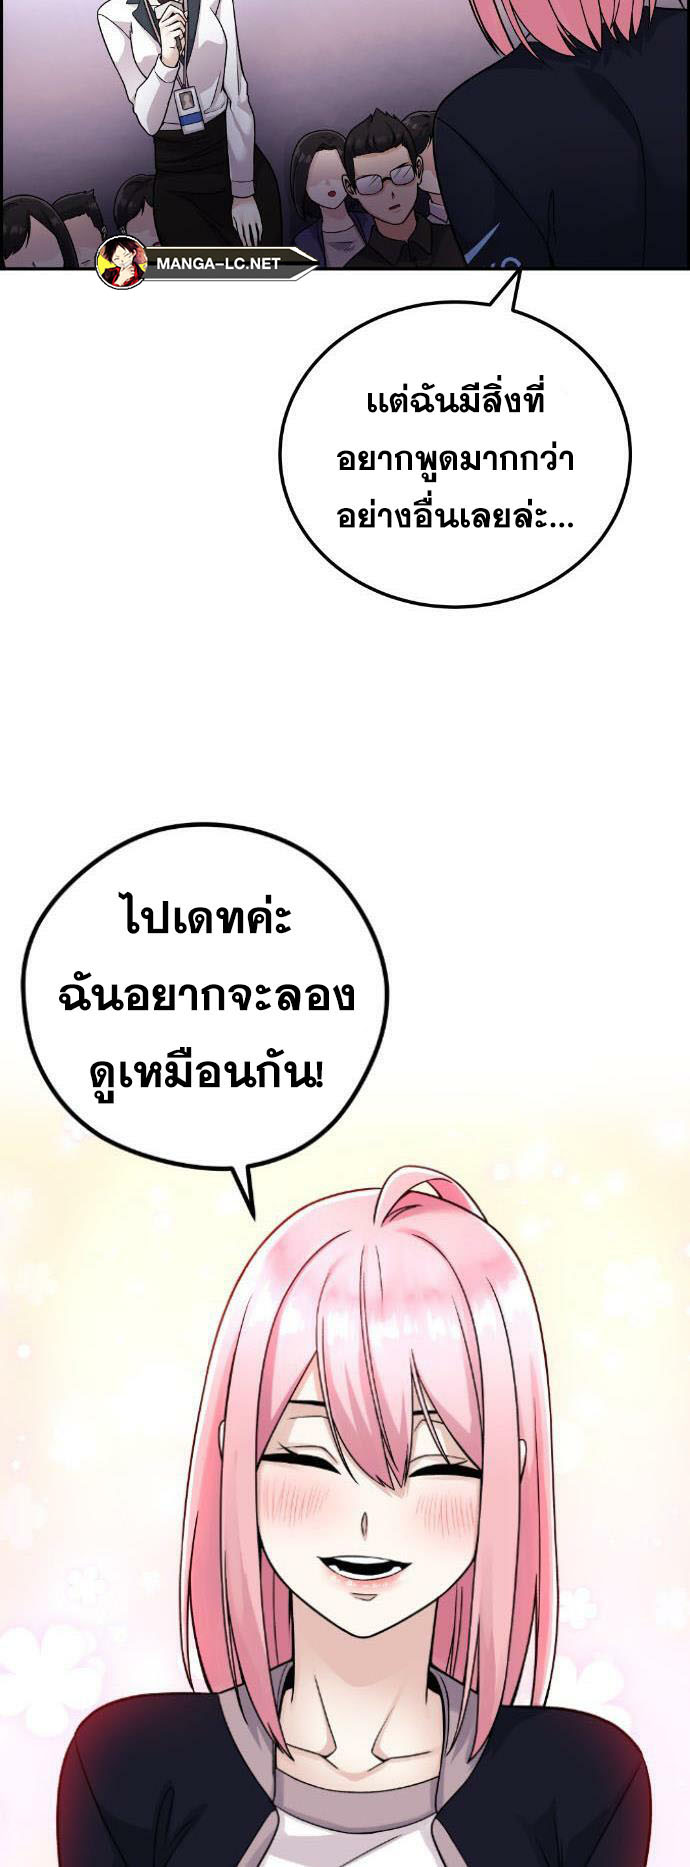 Webtoon Character Na Kang Lim à¸•à¸­à¸™à¸—à¸µà¹ˆ 29 (16)